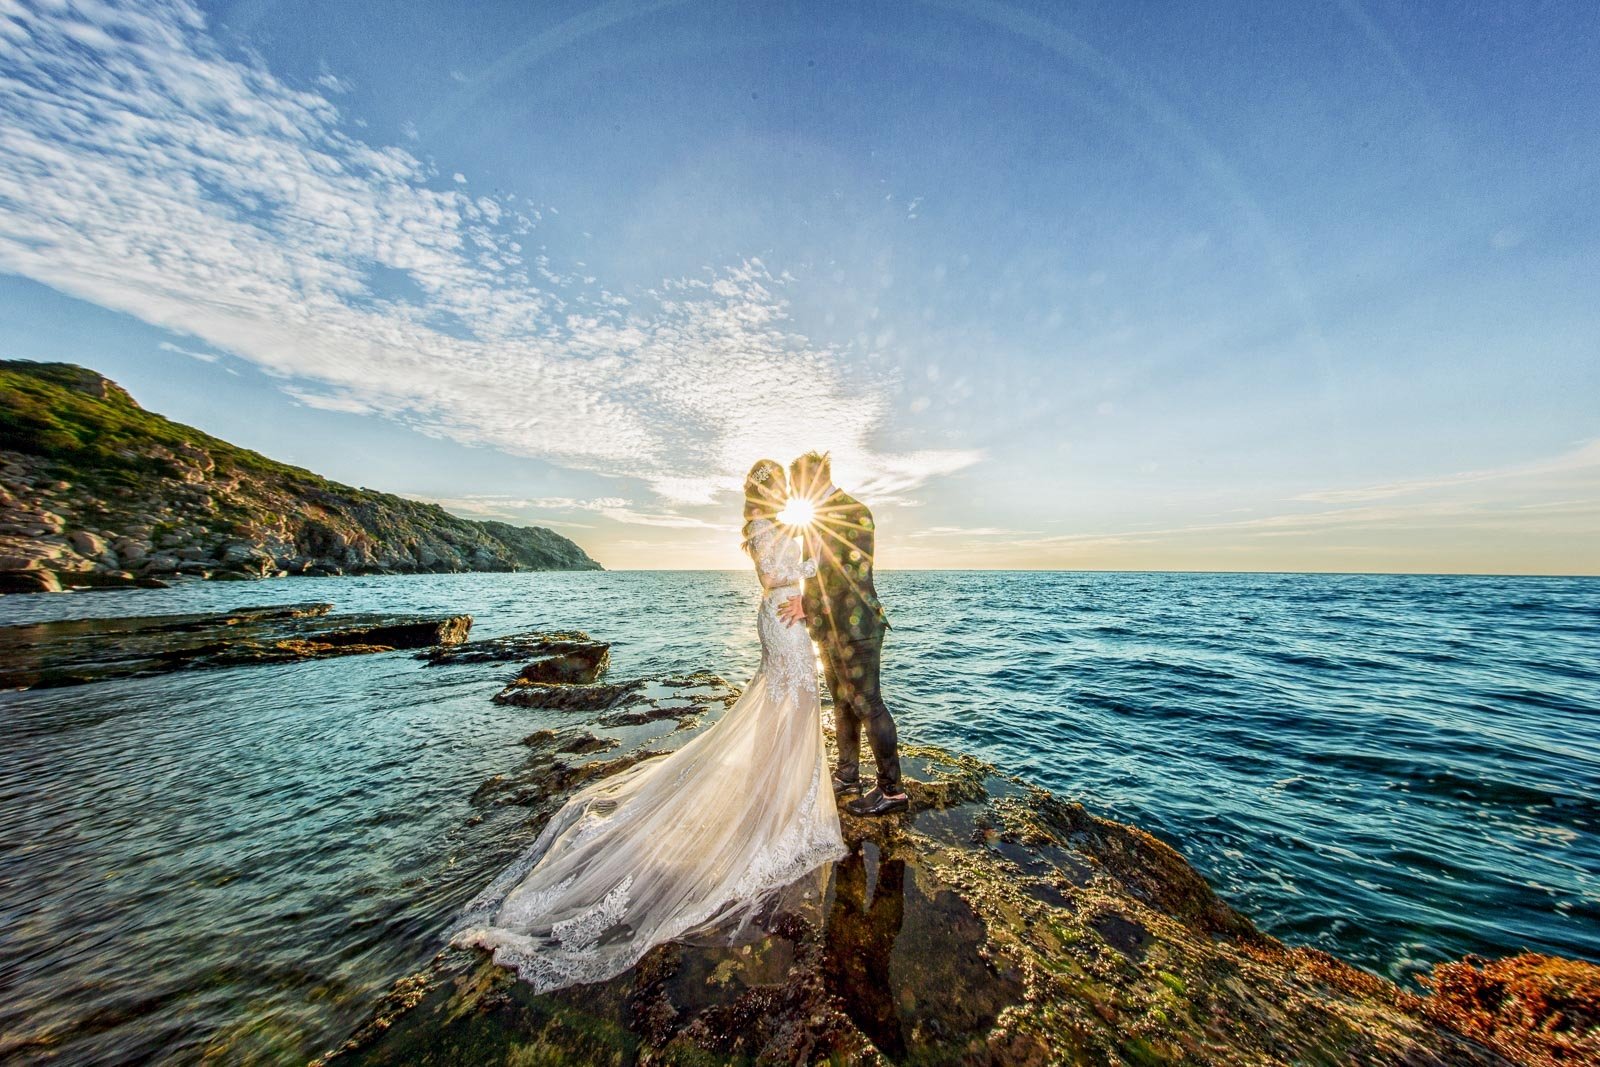 Nếu bạn đang tìm kiếm ý tưởng mới lạ cho bộ ảnh cưới của bạn, hãy xem bức ảnh này để thấy một concept chụp ảnh cưới tuyệt vời với đầy sáng tạo và lãng mạn.